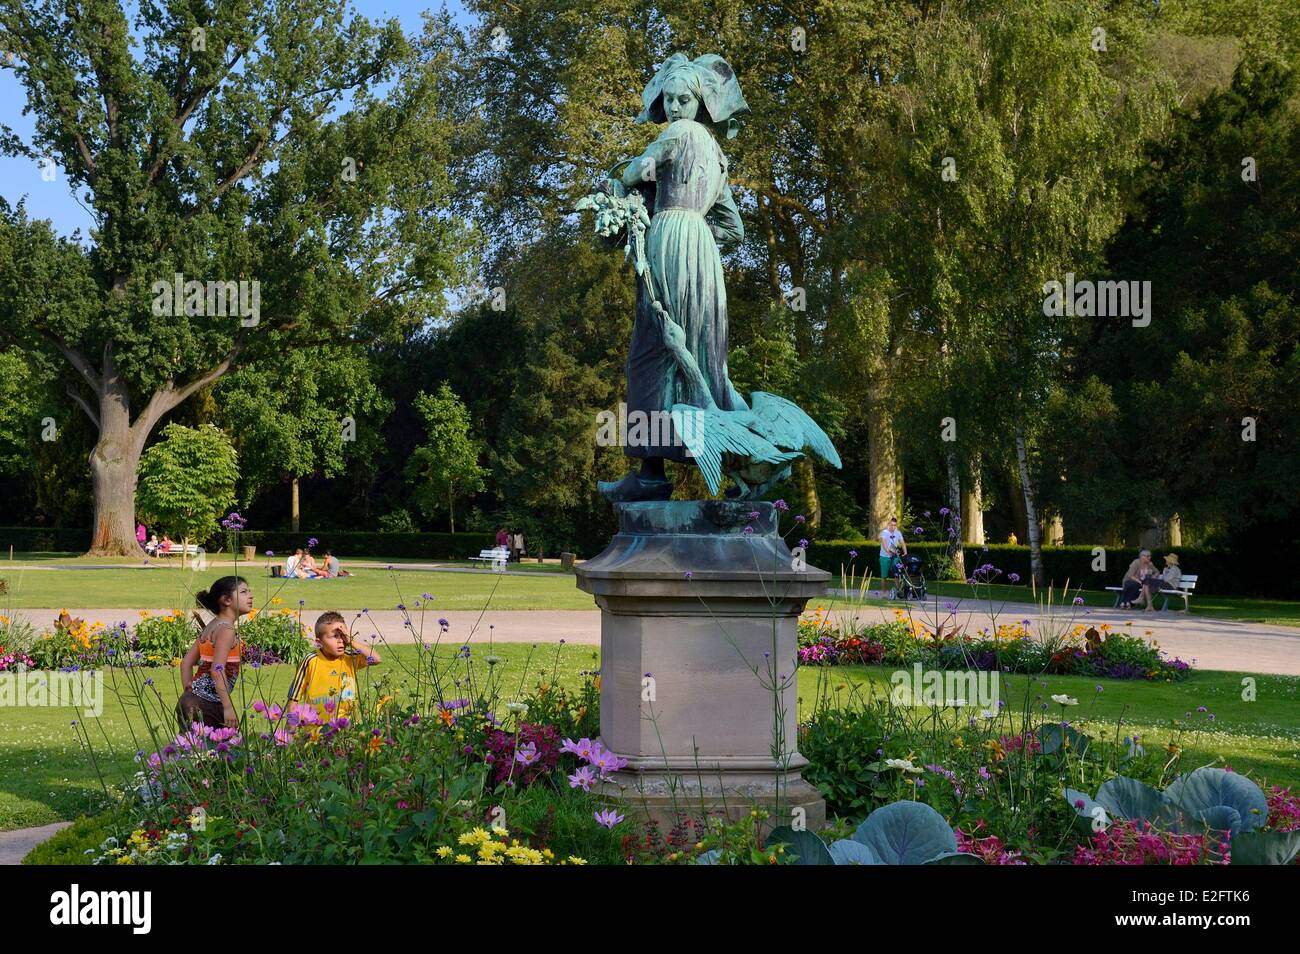 France Bas Rhin Strasbourg Parc de l'Orangerie ORANGERIE (PARC) statue de bronze de Ganseliesel (Elisabeth accompagnée d'une oie) Banque D'Images